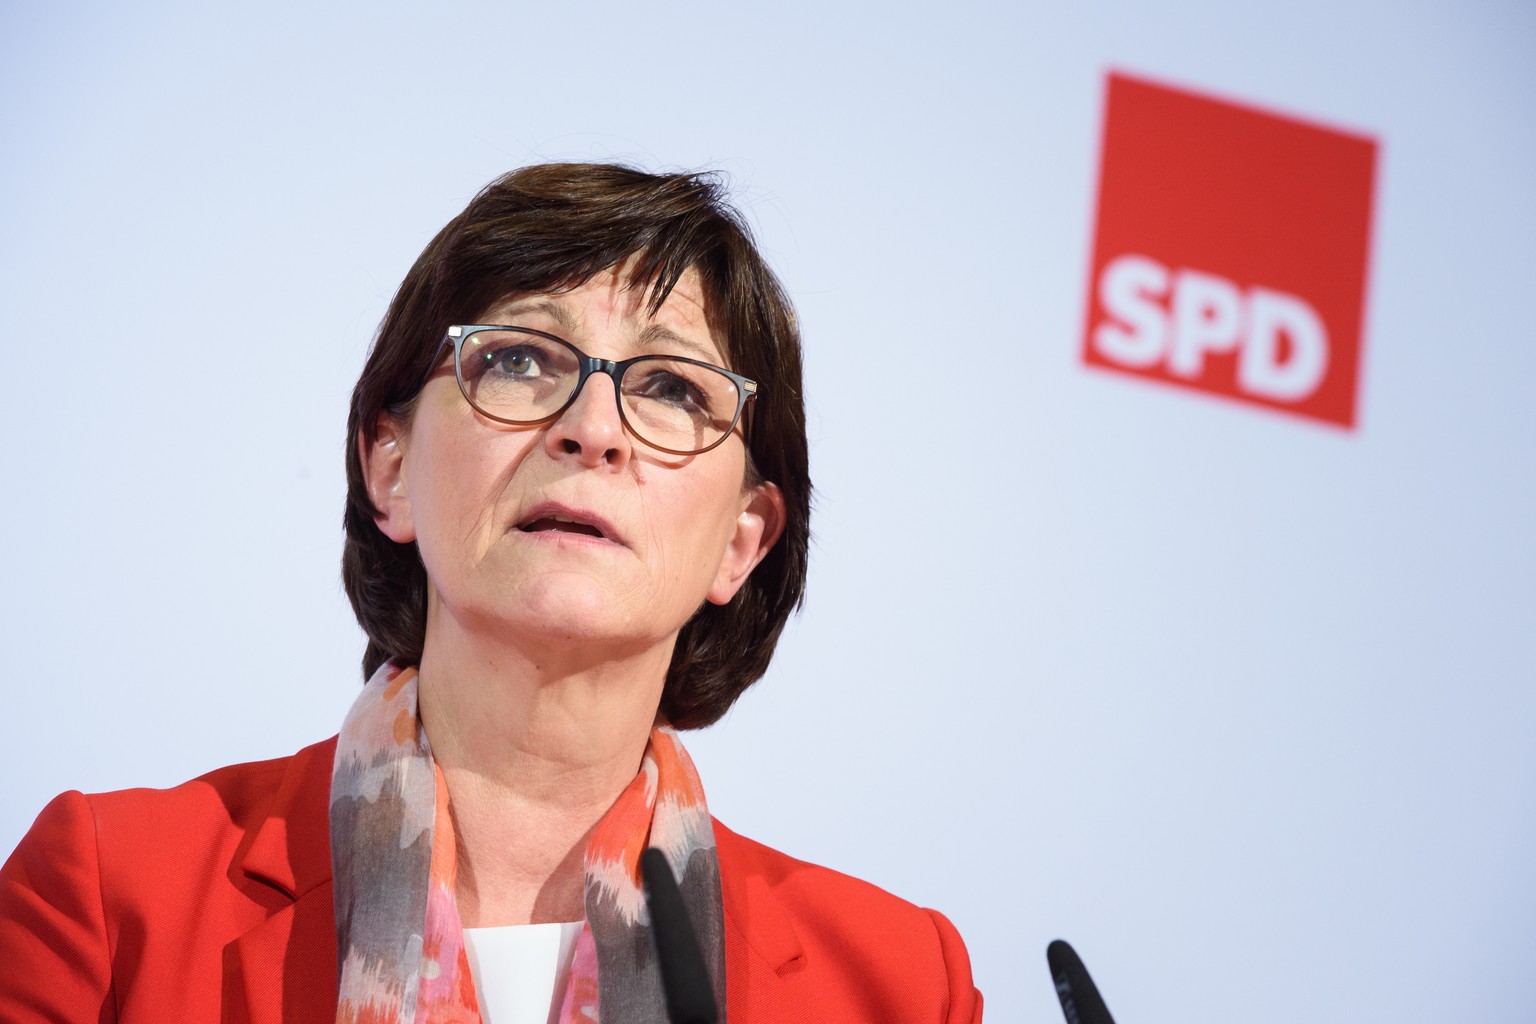 ARCHIV - 09.02.2020, Berlin: Saskia Esken, Bundesvorsitzende der SPD, spricht w